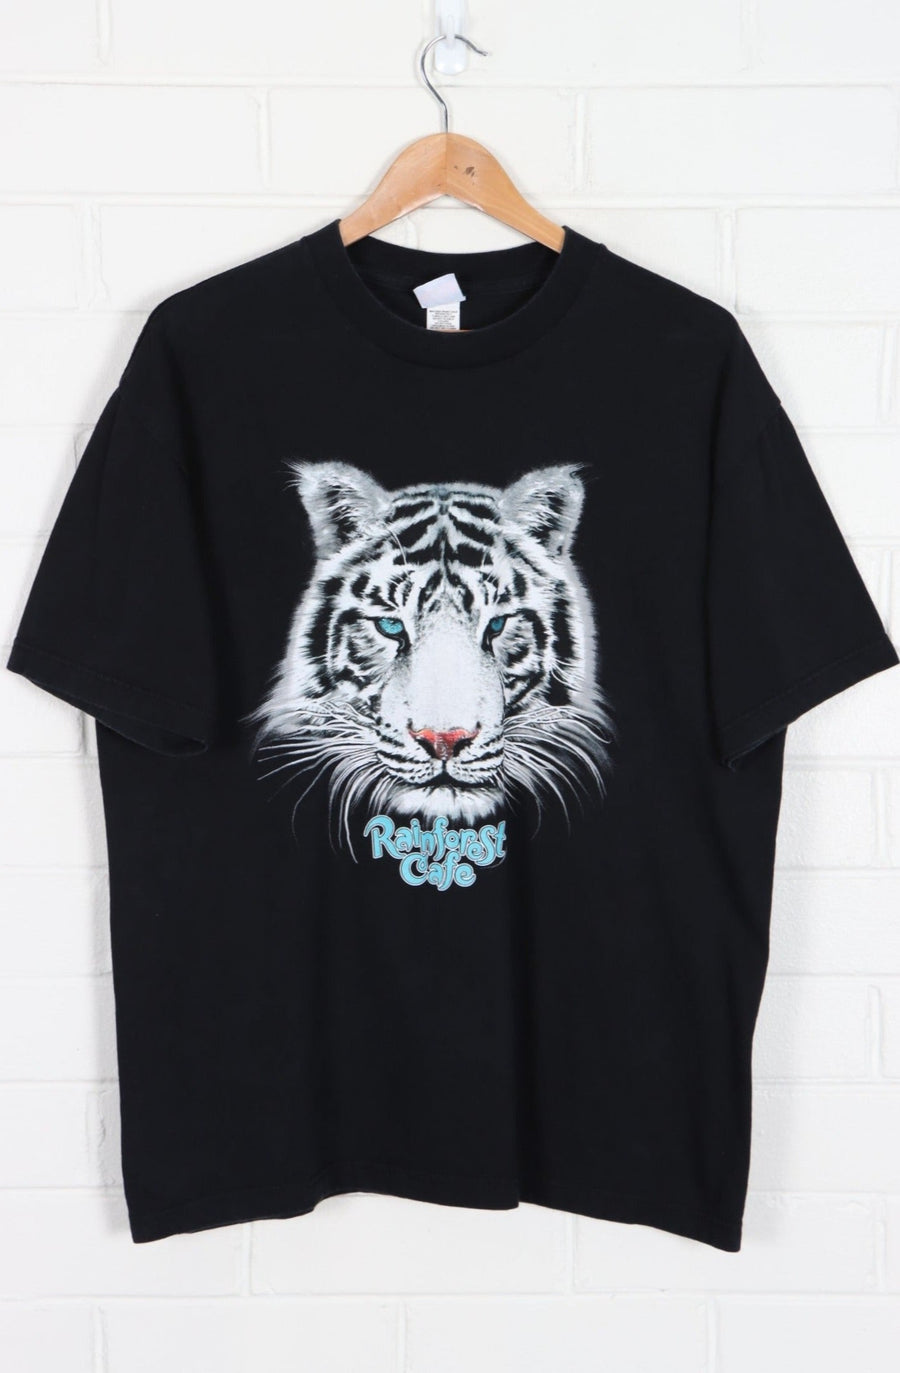 RAINFOREST CAFE White Tiger Glitter Eyes T-Shirt (L)